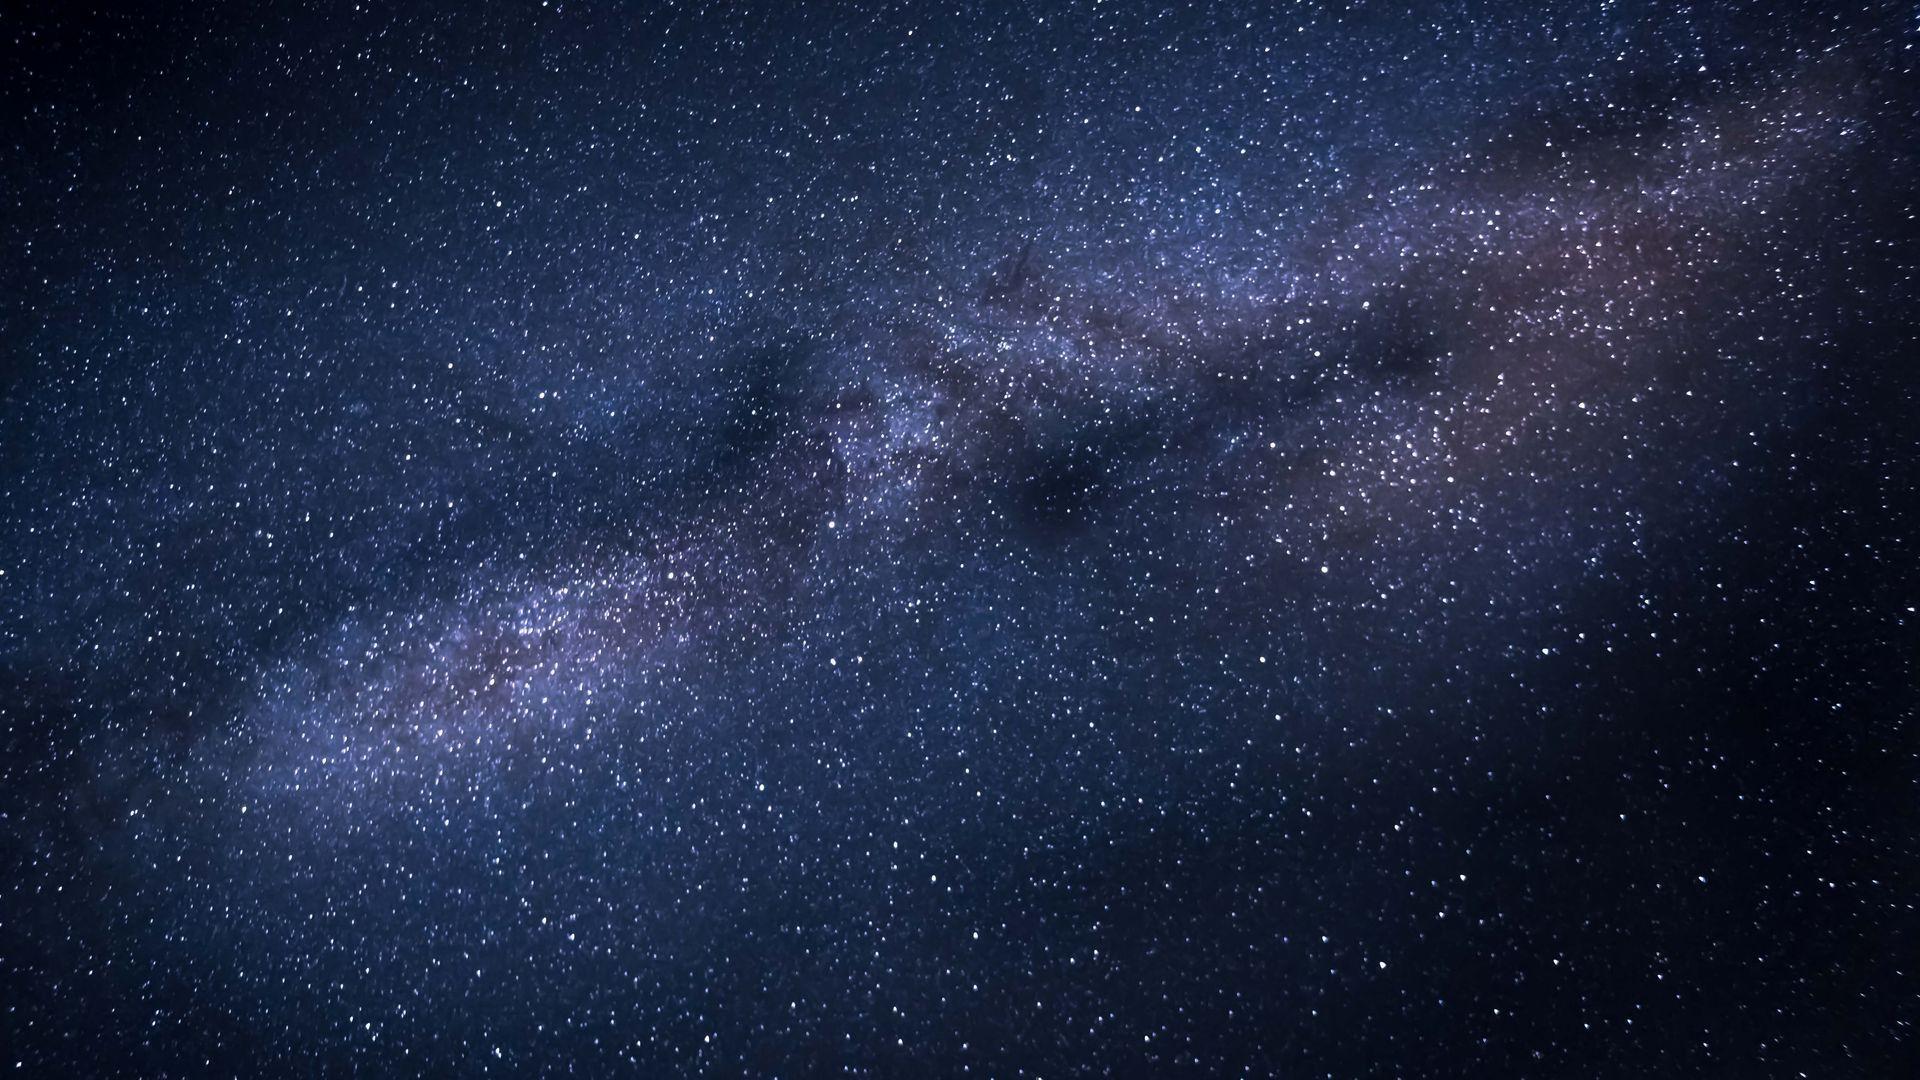 Hình nền đen galaxy: Cảm nhận cảm giác trong mê cung đêm tối với hình nền đen galaxy. Tận hưởng sự đầy ma mị và khoa học viễn tưởng, bạn sẽ được trải nghiệm những khoảnh khắc quý giá này ngay từ việc tải hình nền đen galaxy này.